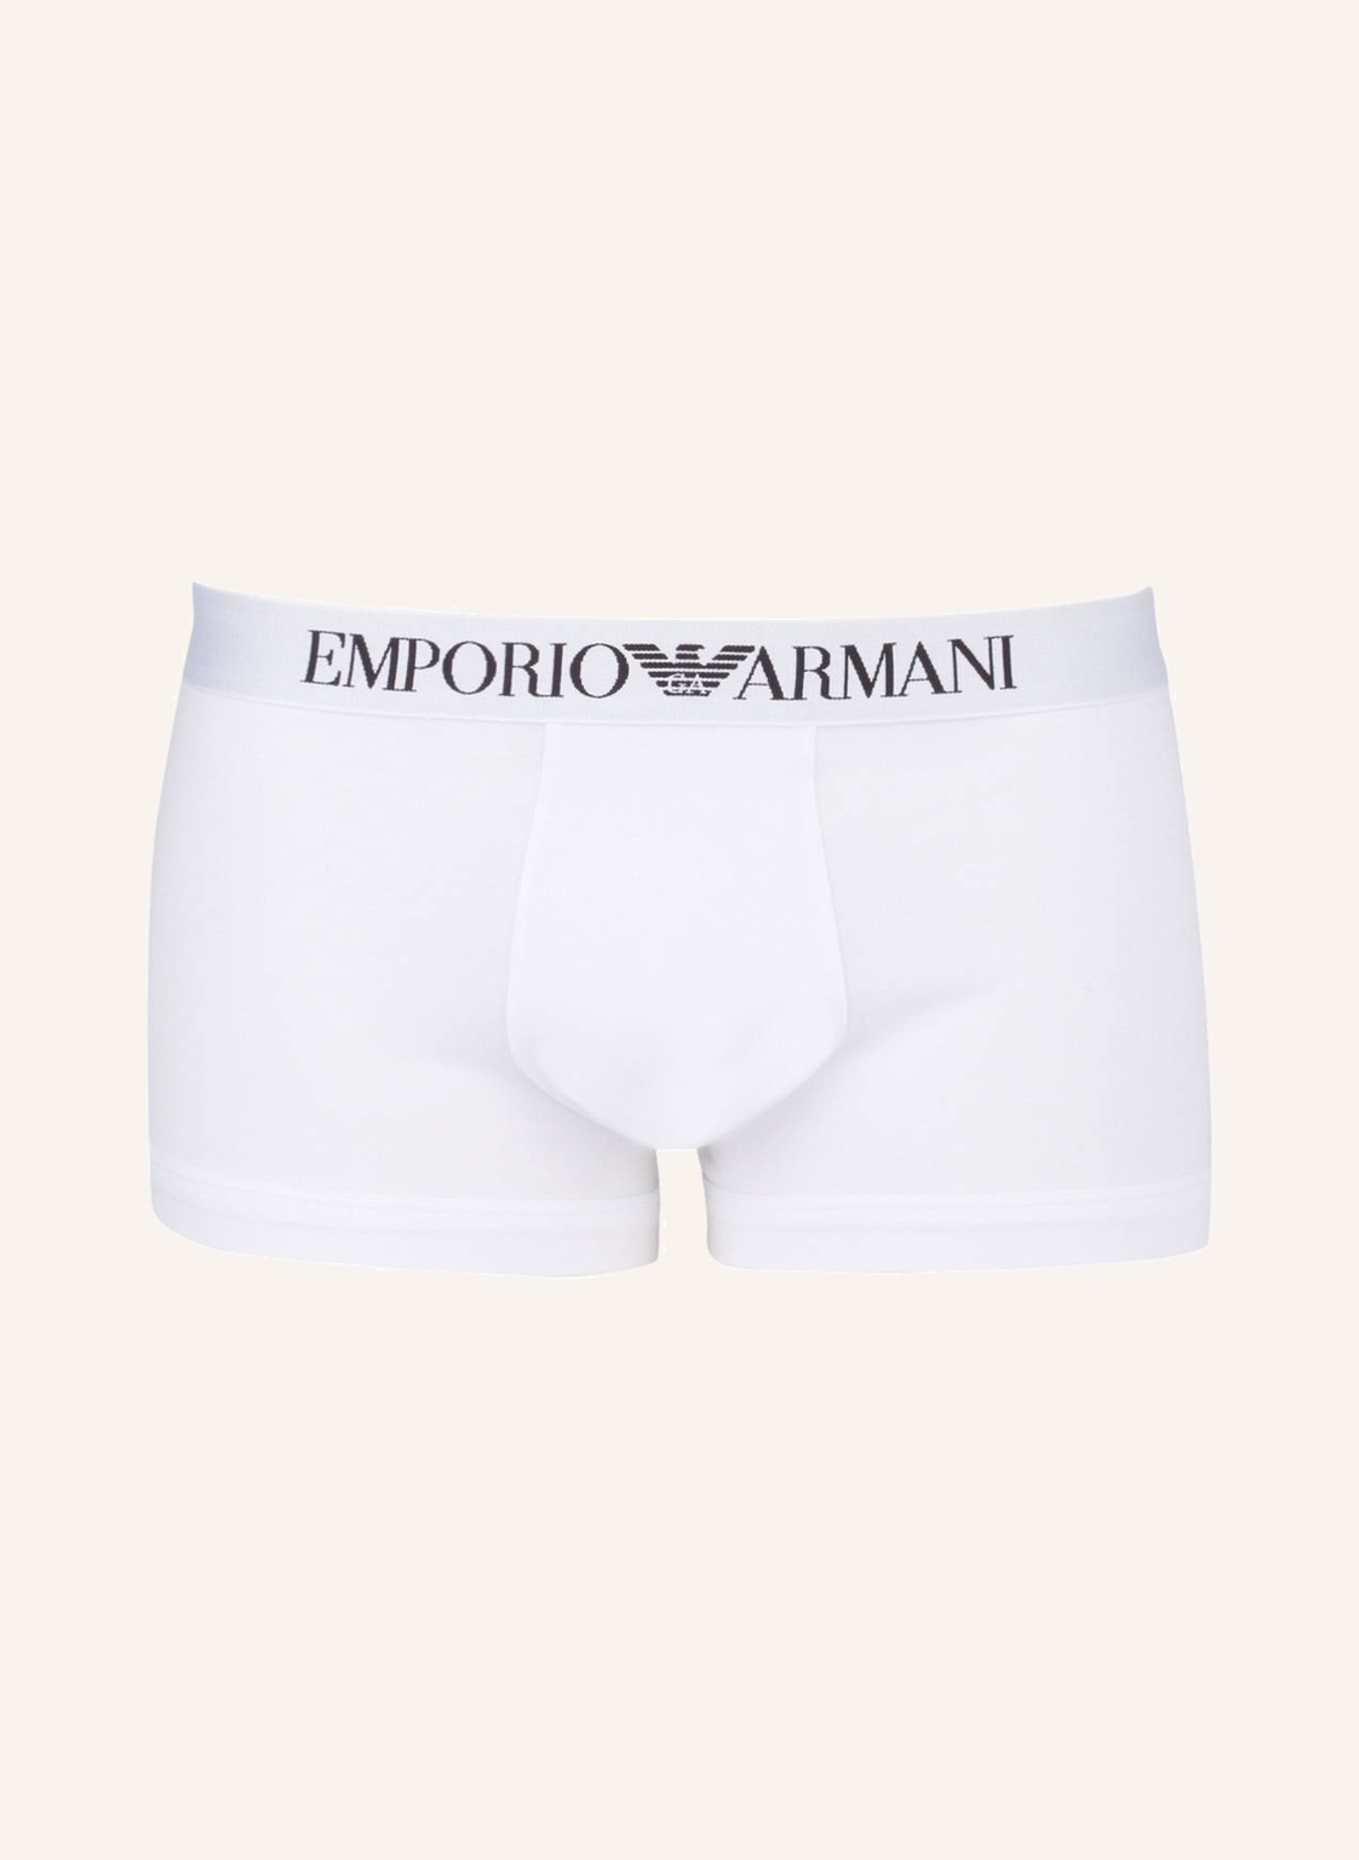 EMPORIO ARMANI Boxer shorts, Color: WHITE (Image 1)